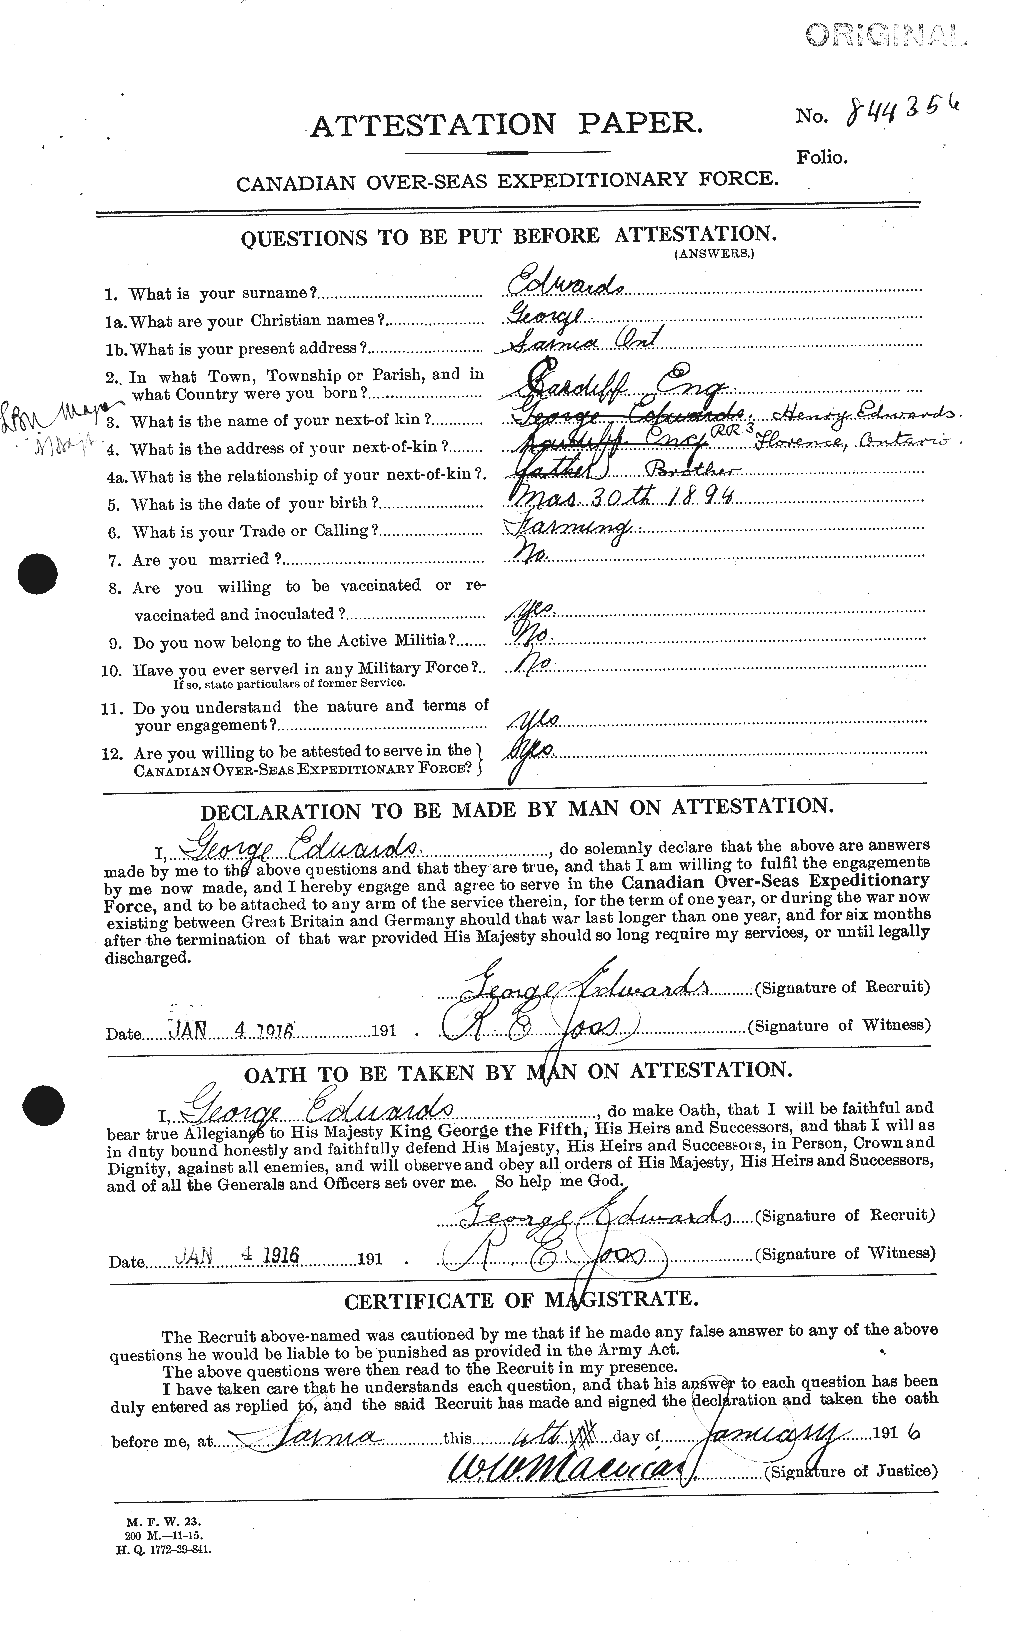 Dossiers du Personnel de la Première Guerre mondiale - CEC 309090a